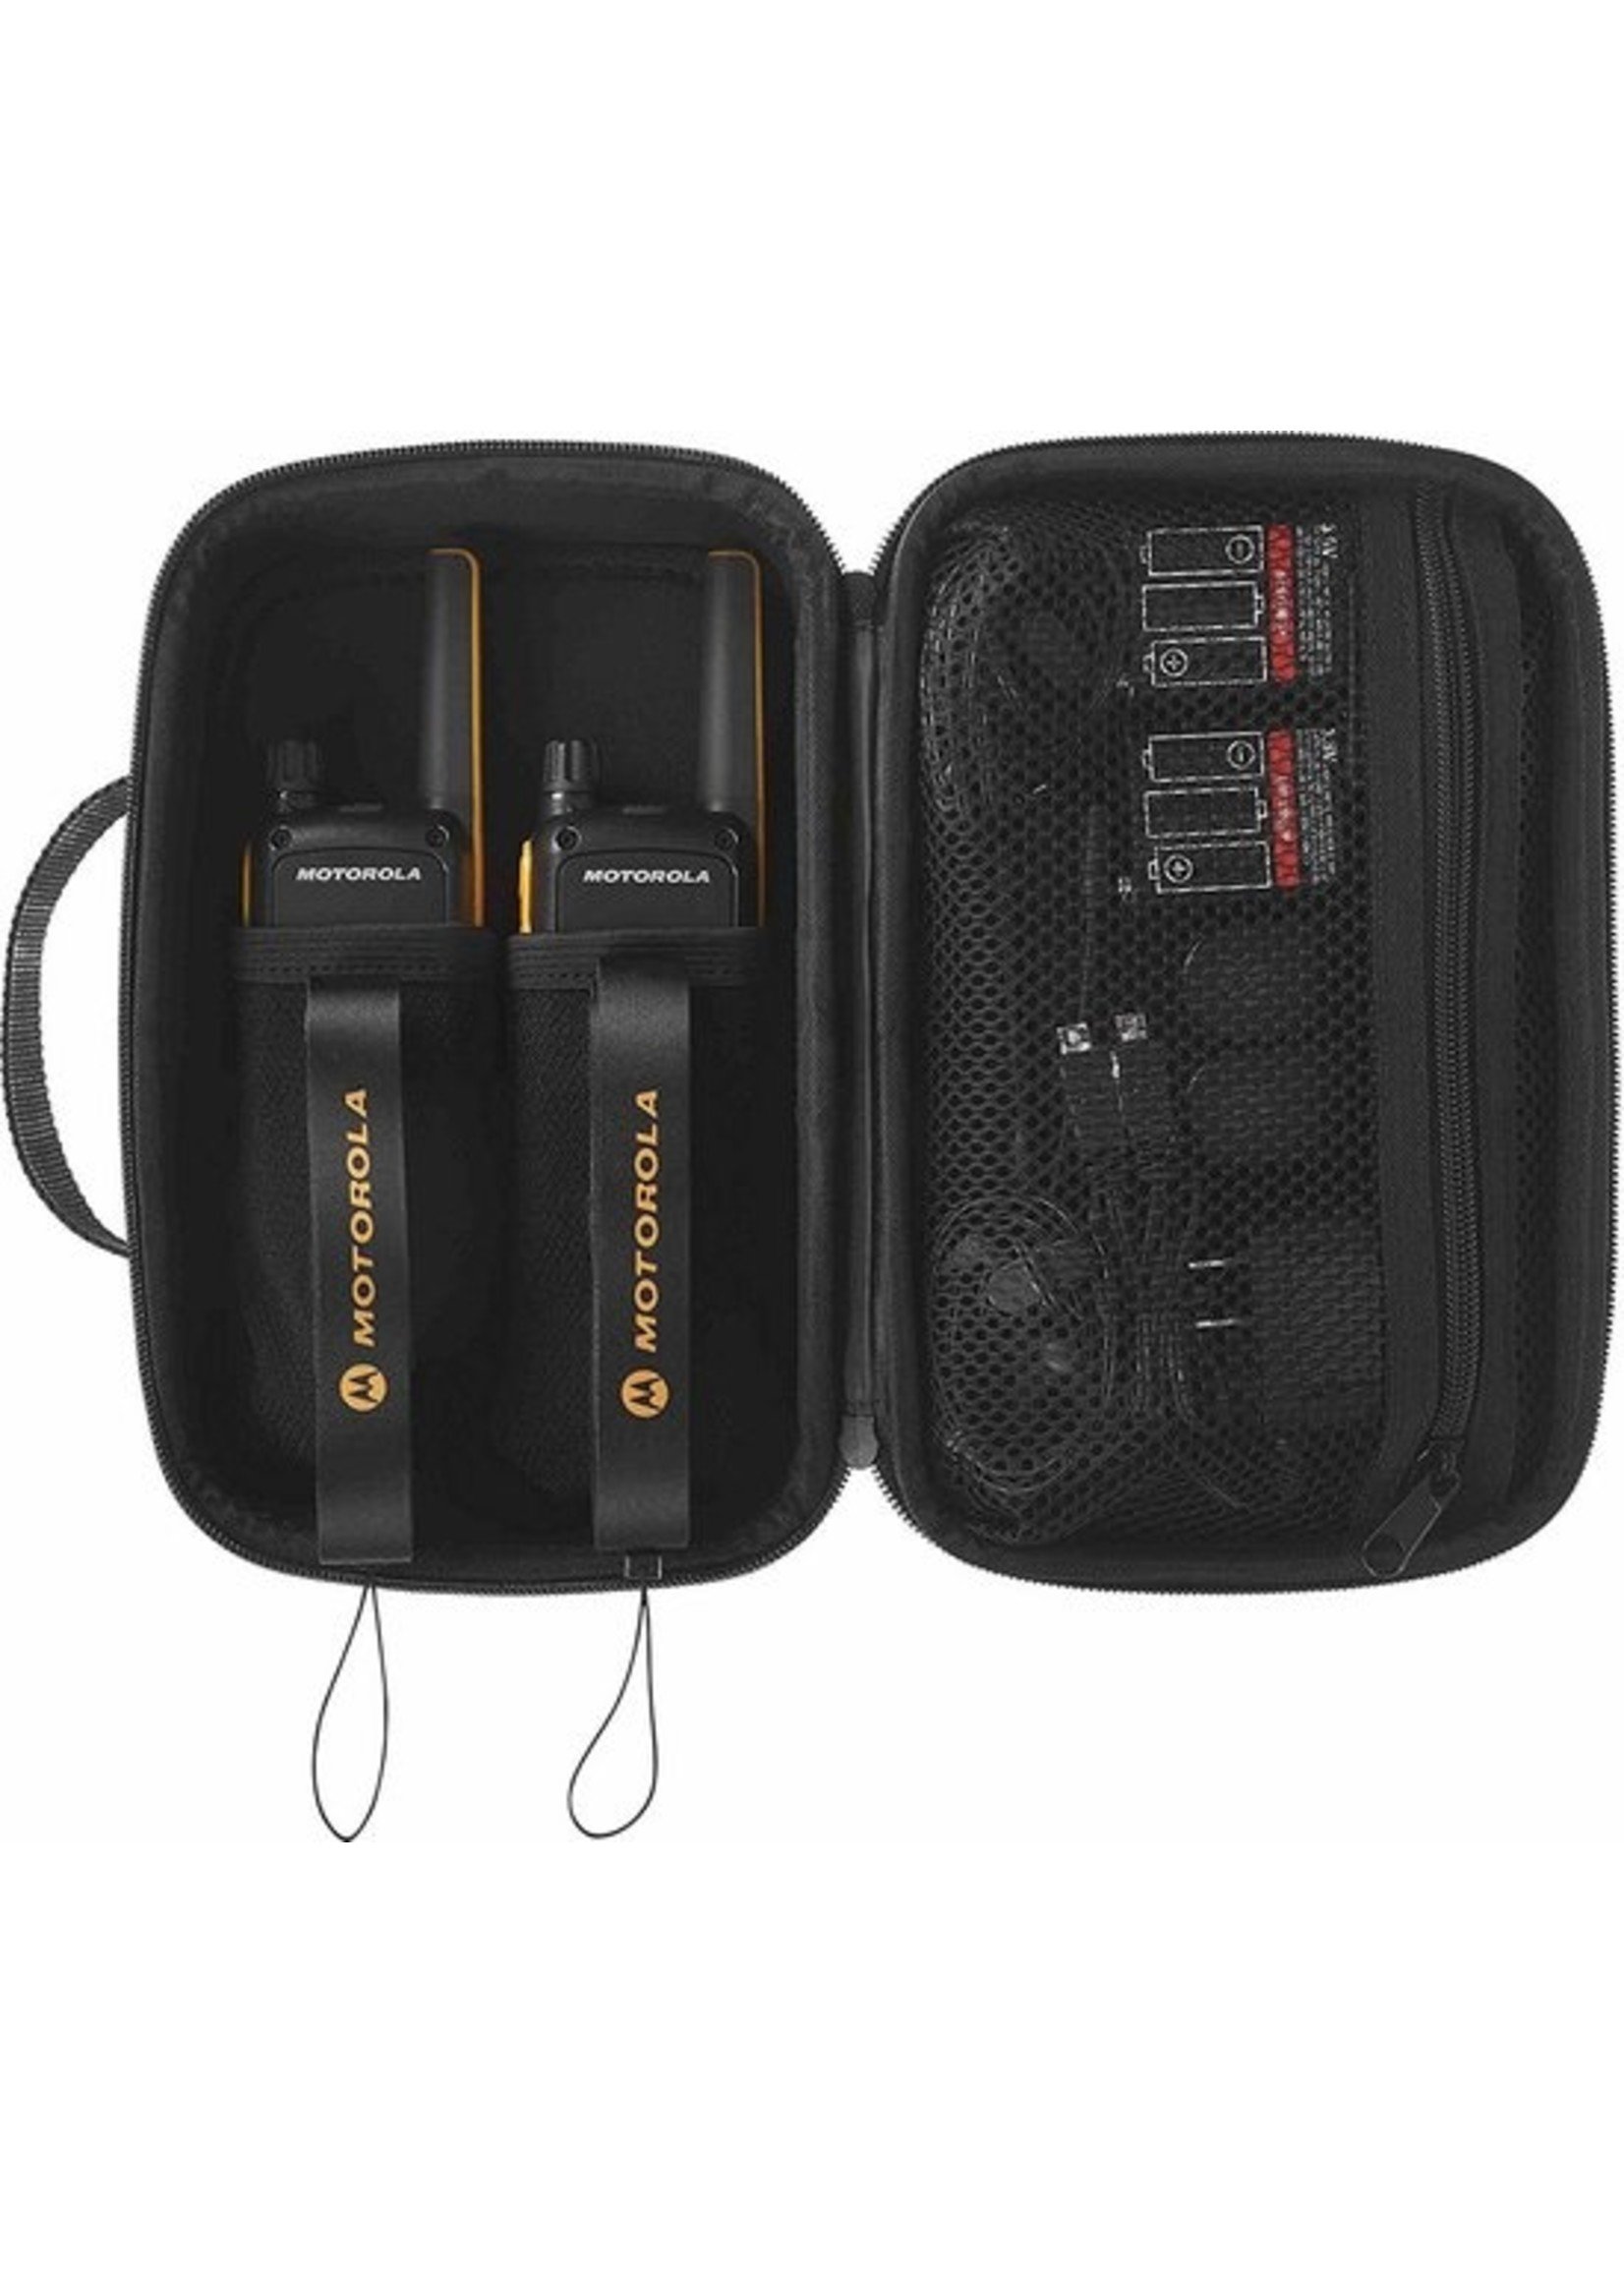 Motorola Motorola TLKR-T82 Extreme - Twin Pack - met Remote Speakers - Zwart